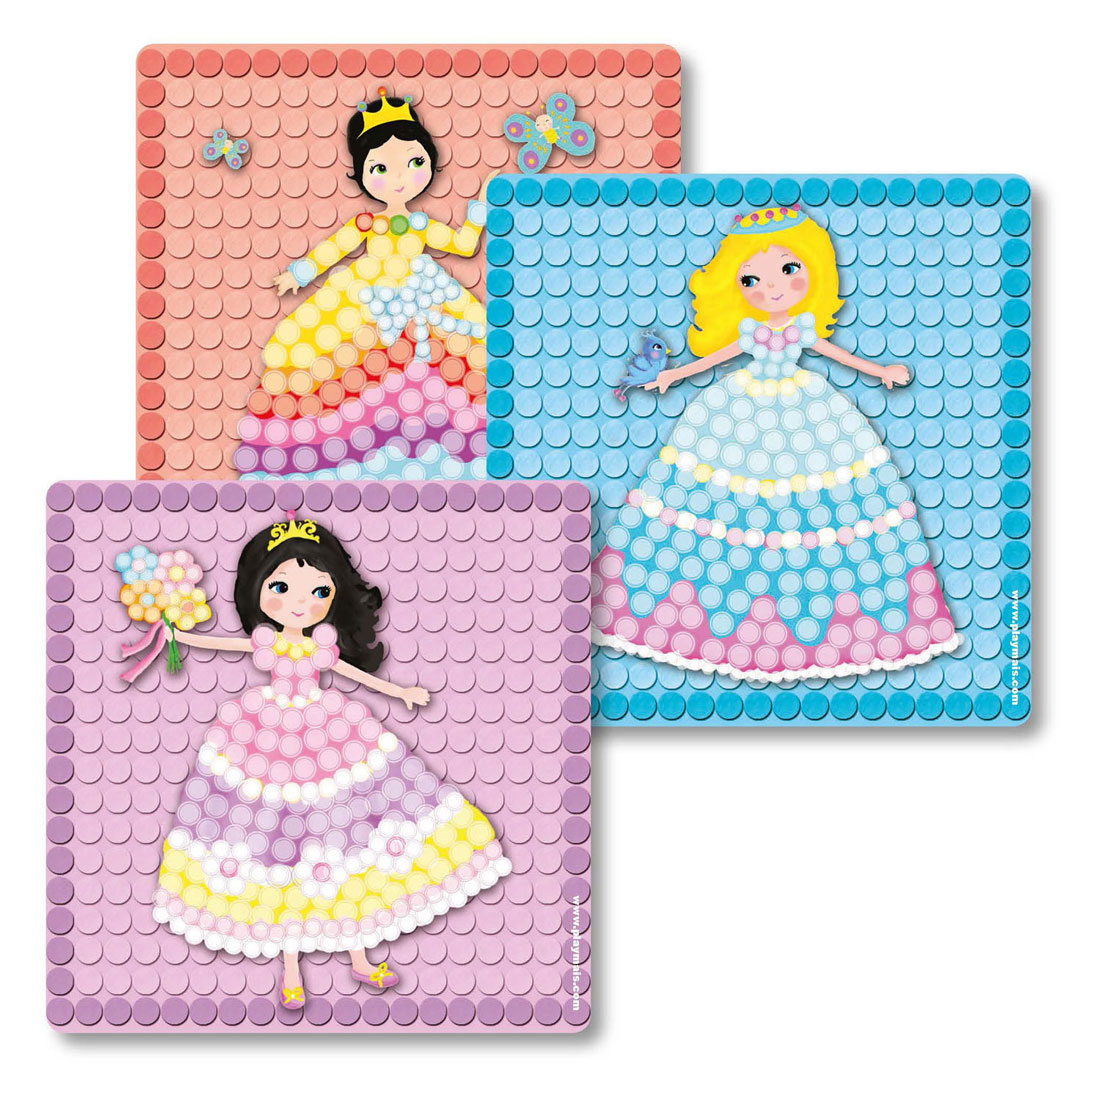 Les cartes mosaïque Playmais décorent la princesse